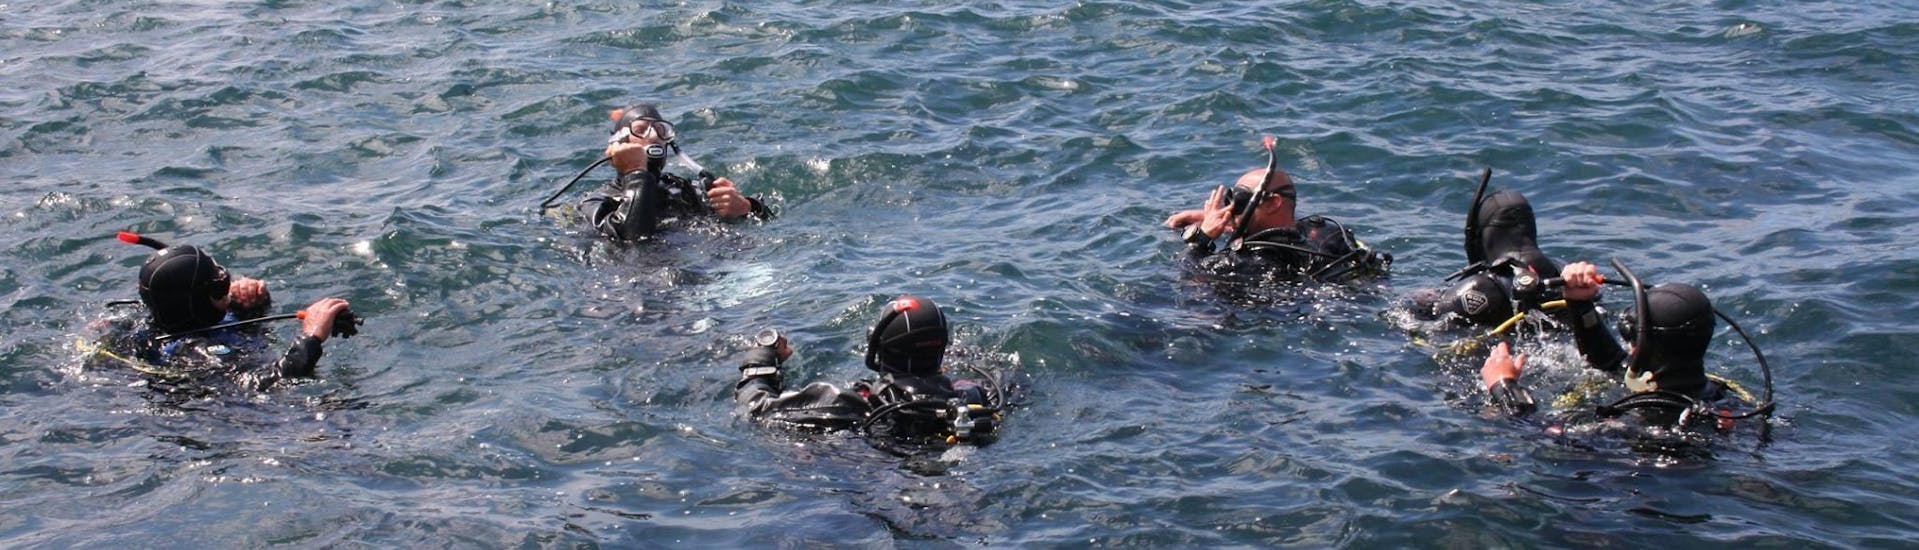 Die Teilnehmer des Schnuppertauchens für Anfänger in der St. Paul's Bay mit dem Octopus Garden Diving Centre in Malta bereiten sich auf ihren ersten Tauchgang vor.